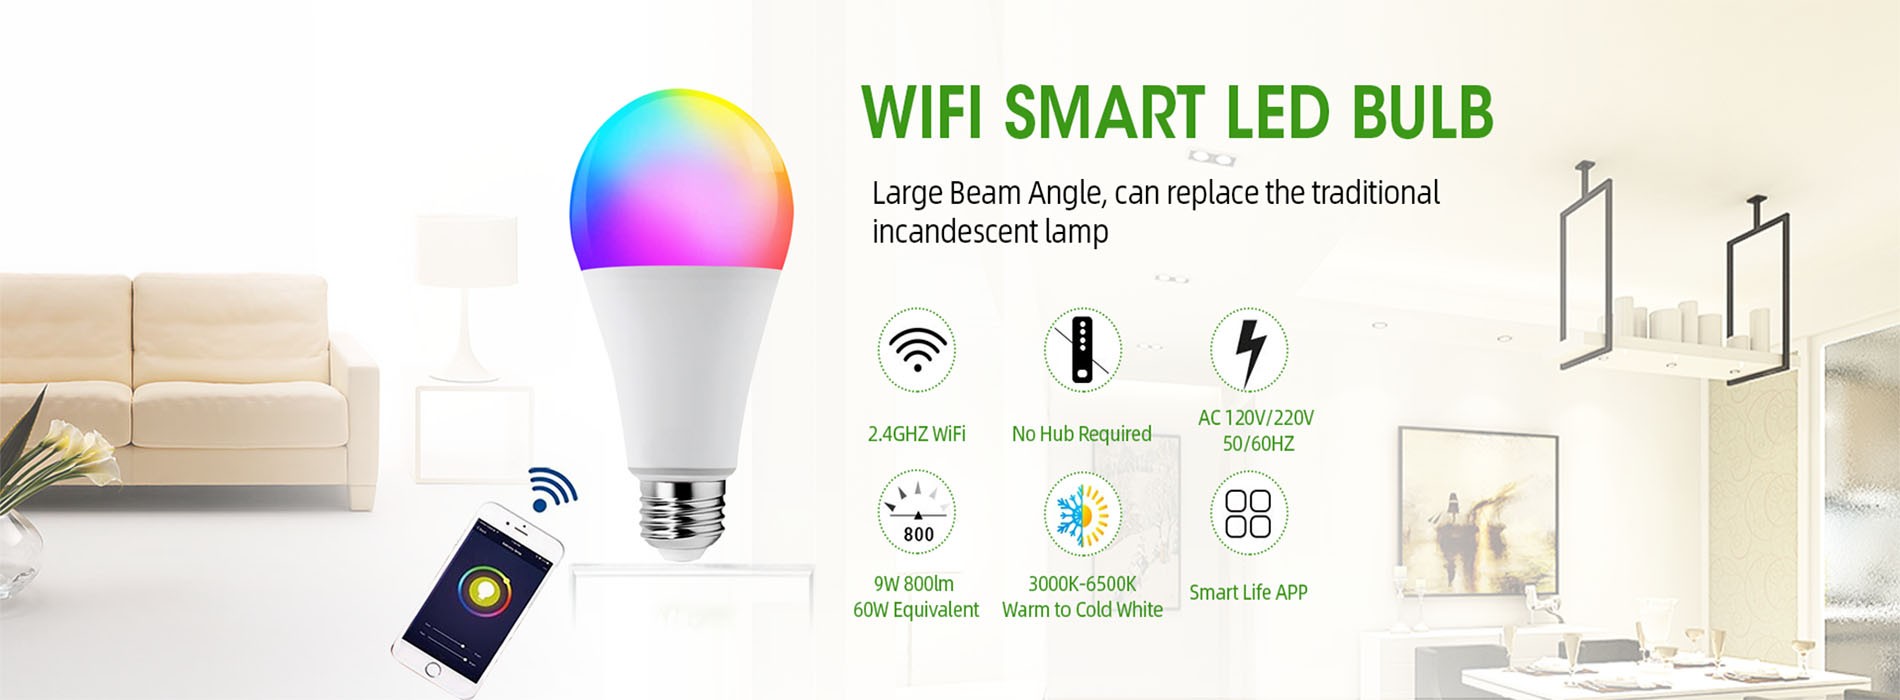 Smart Wifi Bulb